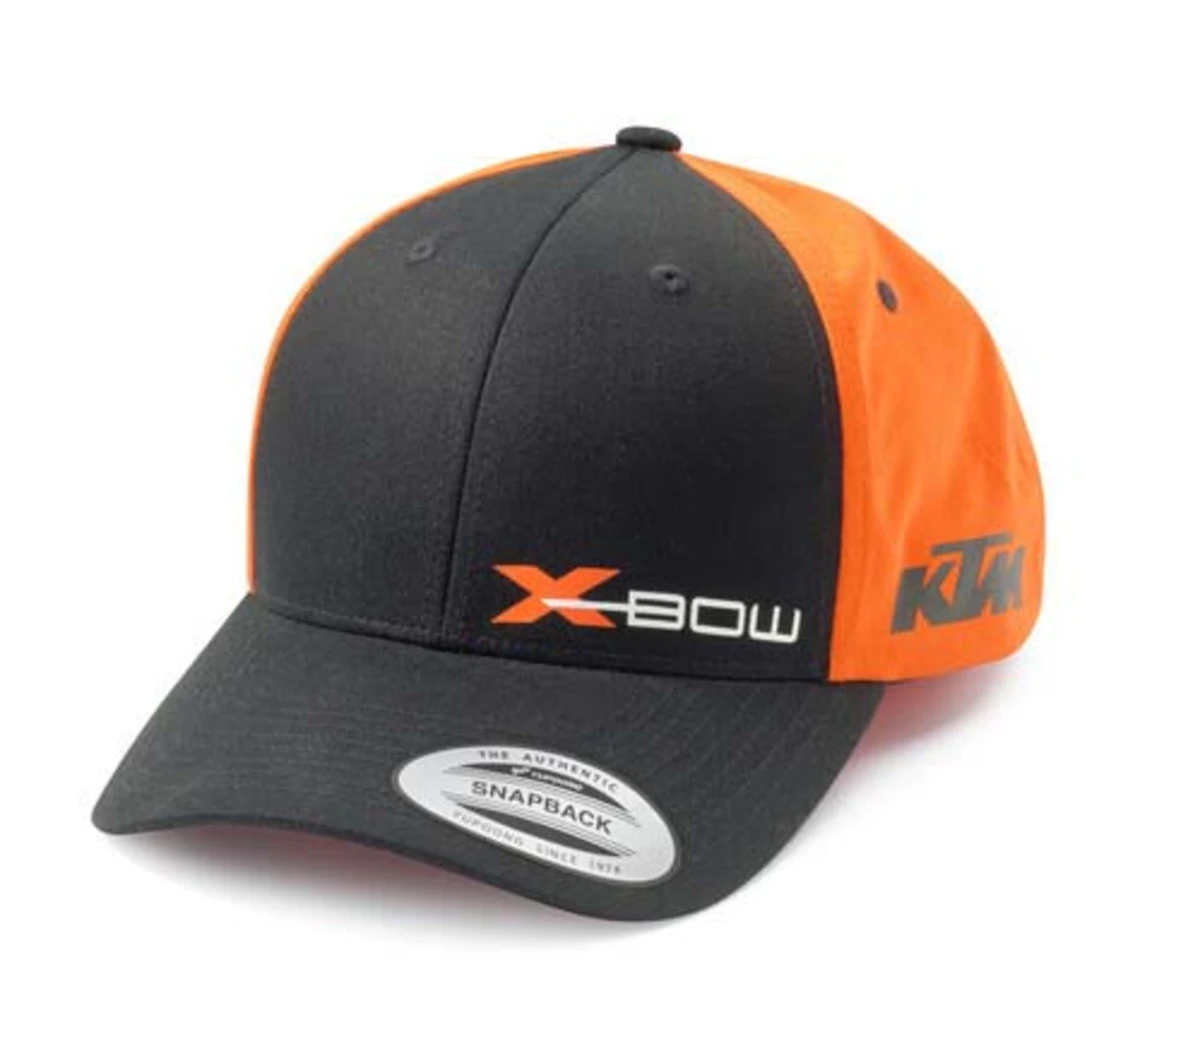 KTM X-BOW REPLICA TEAM CURVED CAP